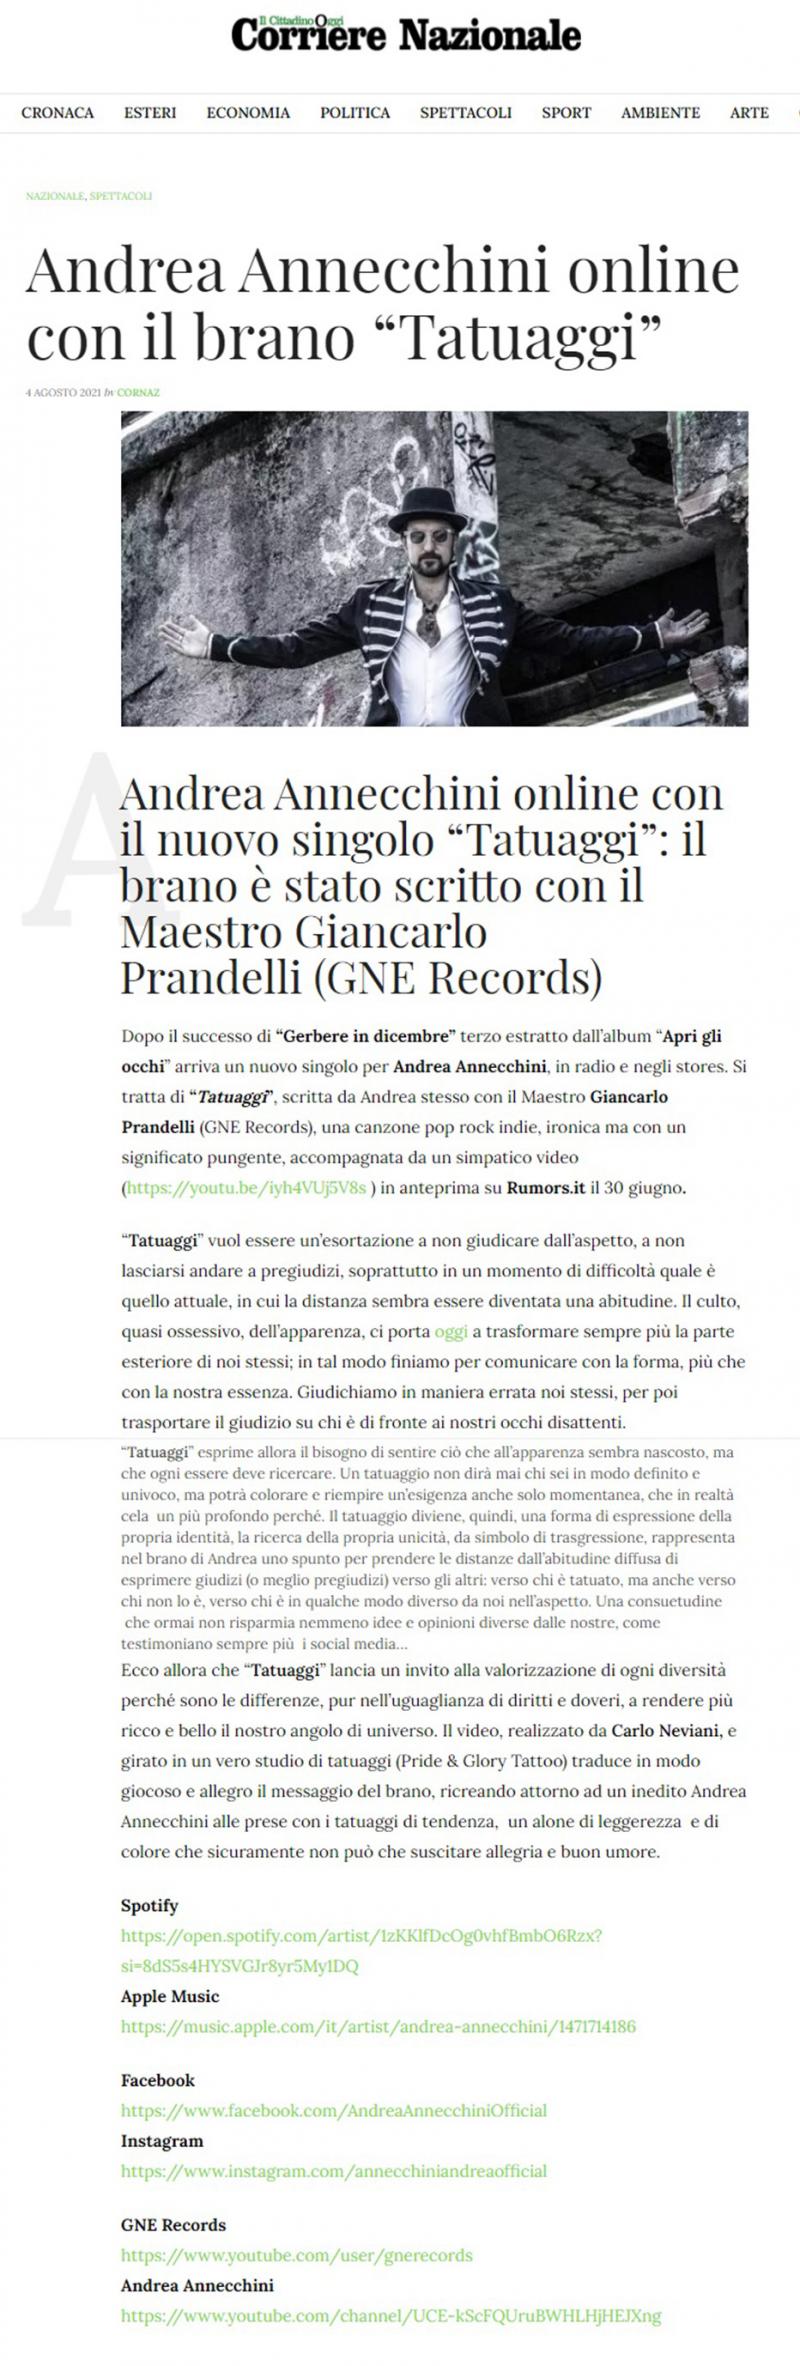 Andrea Annecchini sul Corriere Nazionale